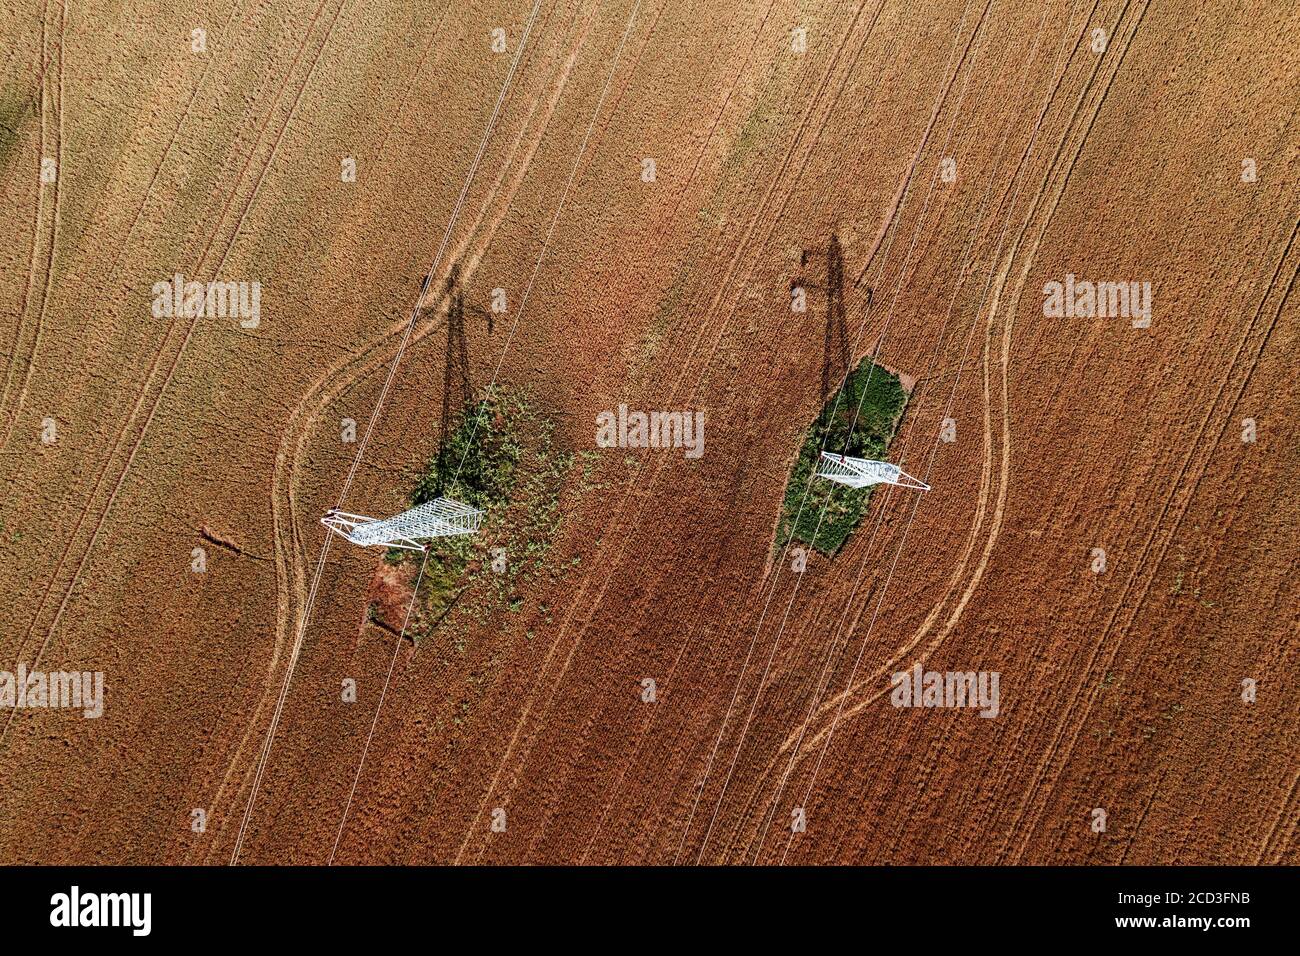 Vista aerea dei piloni elettrici nel campo agricolo che colano l'ombra sui raccolti, vista dall'alto, fotografia di droni Foto Stock